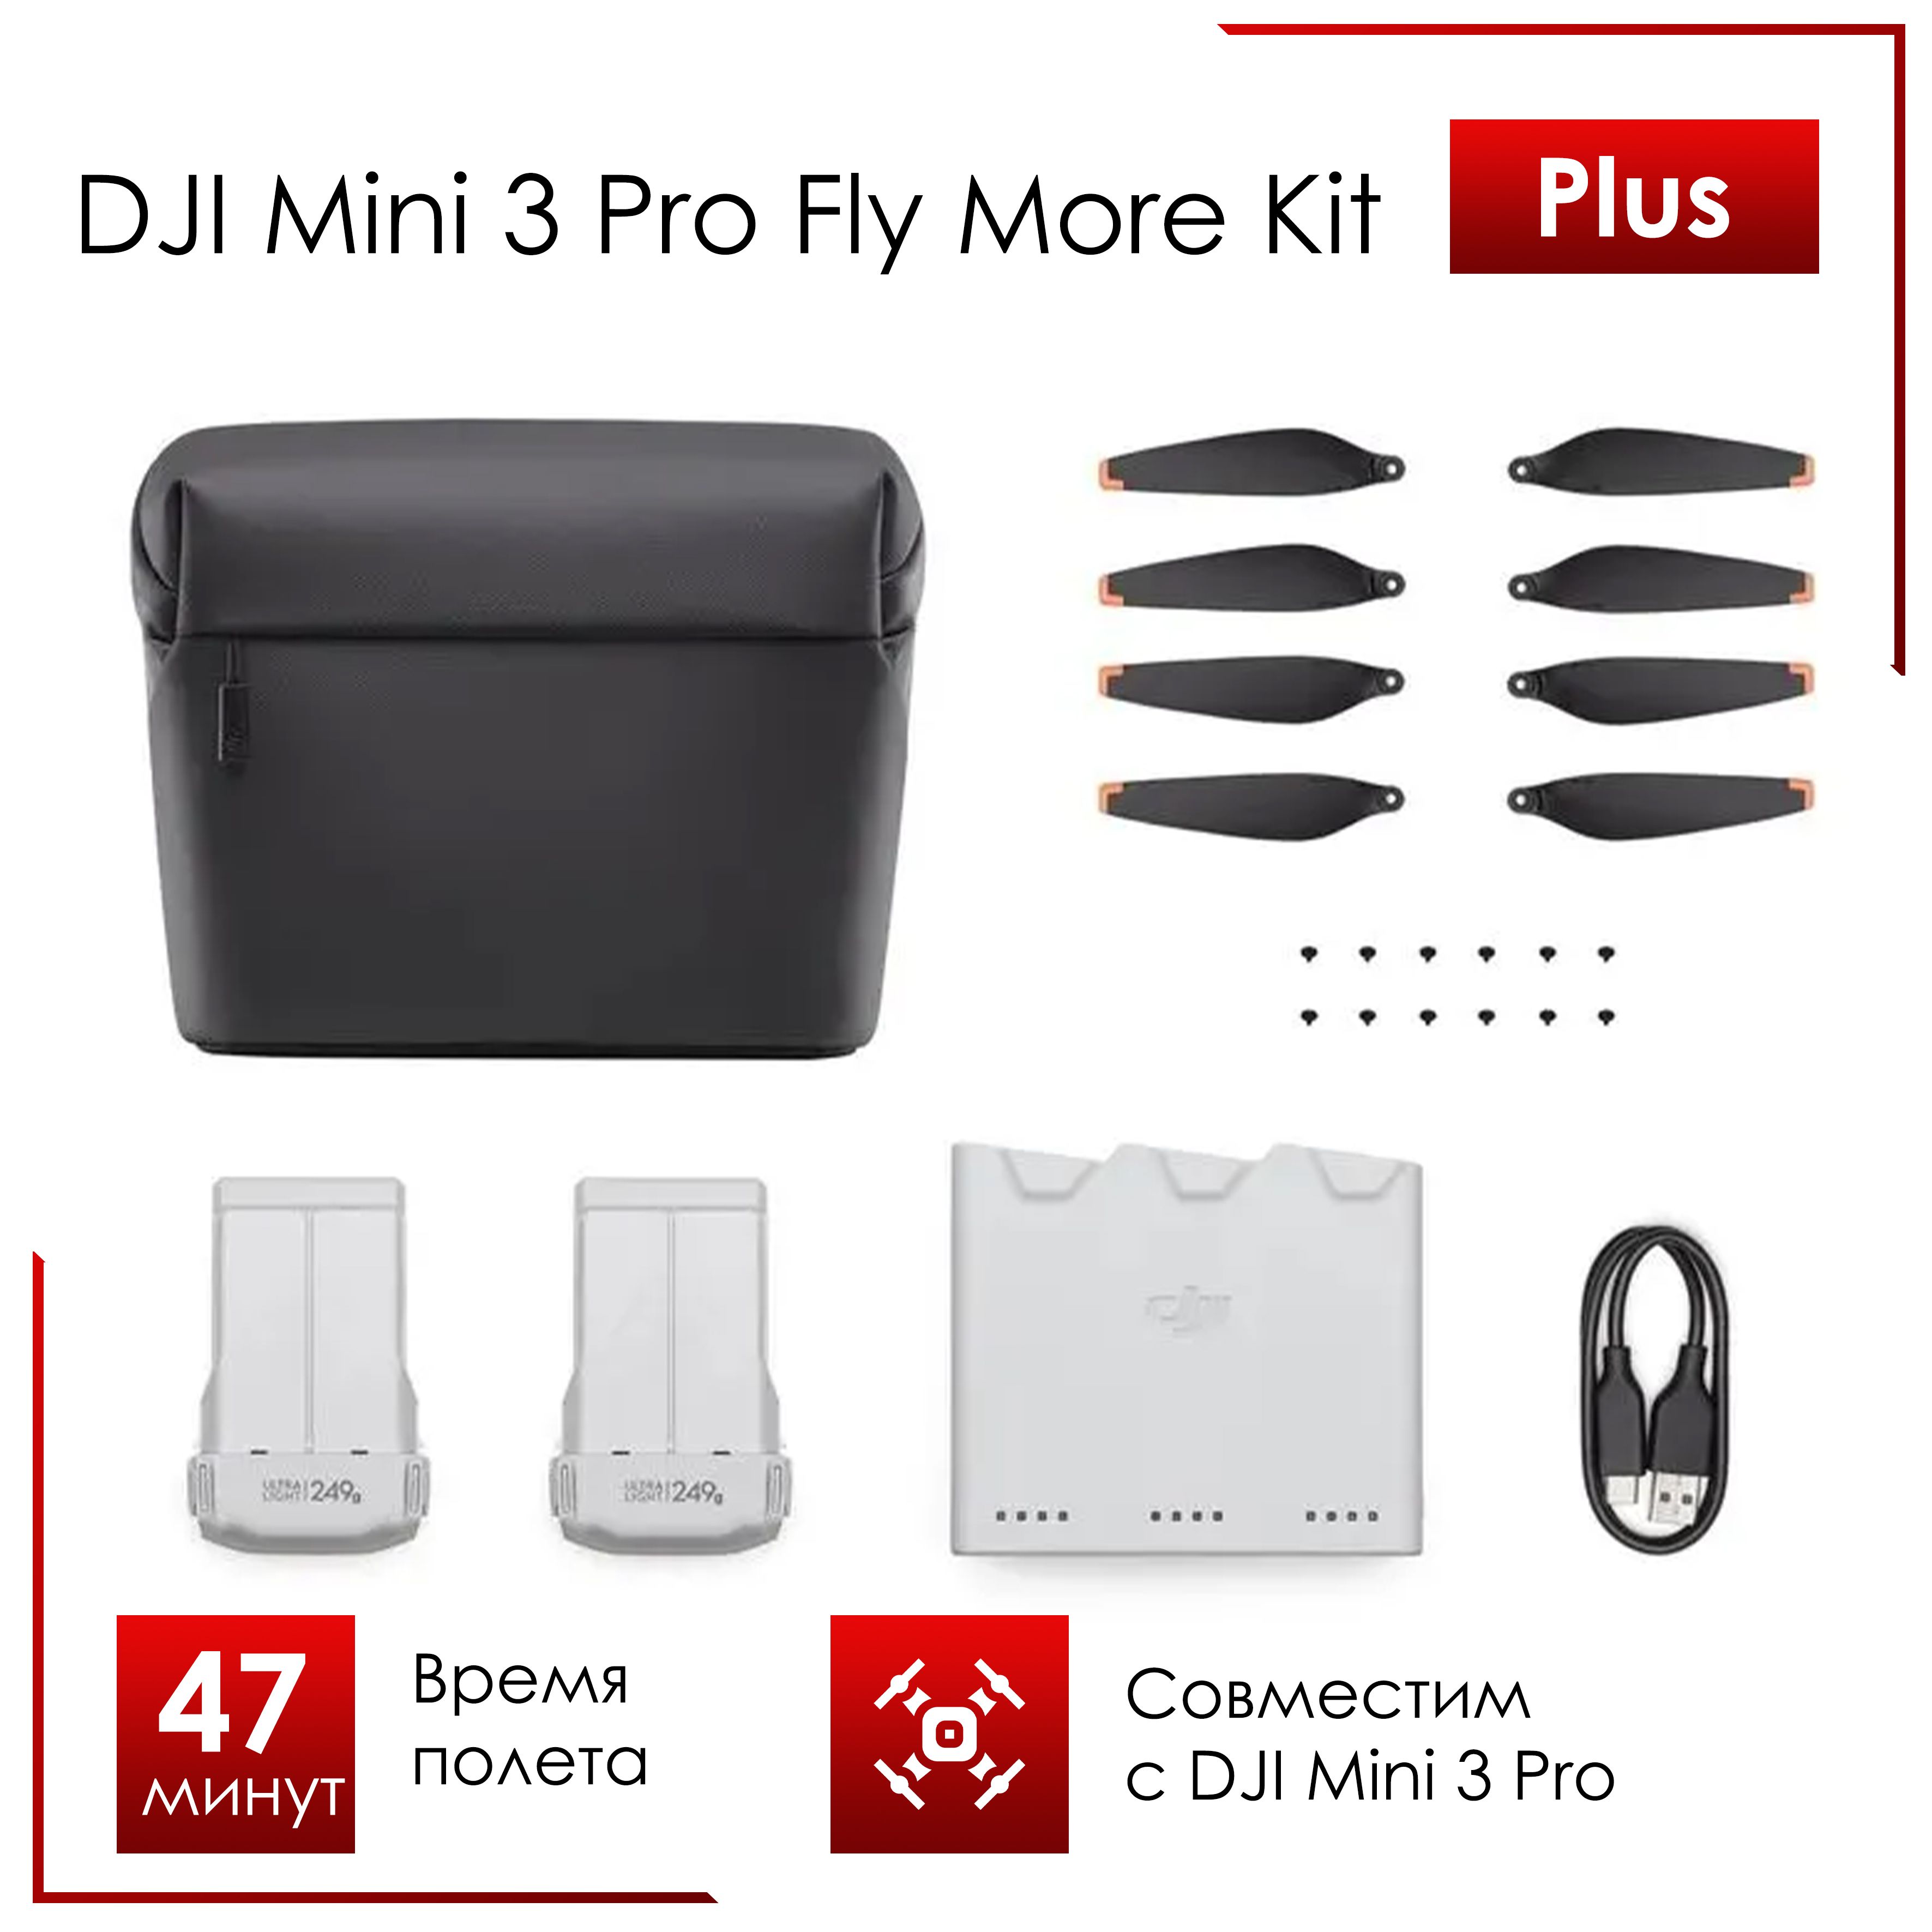 Комплект набор Fly More Kit Plus для DJI Mini 3 Pro (47 мин полета